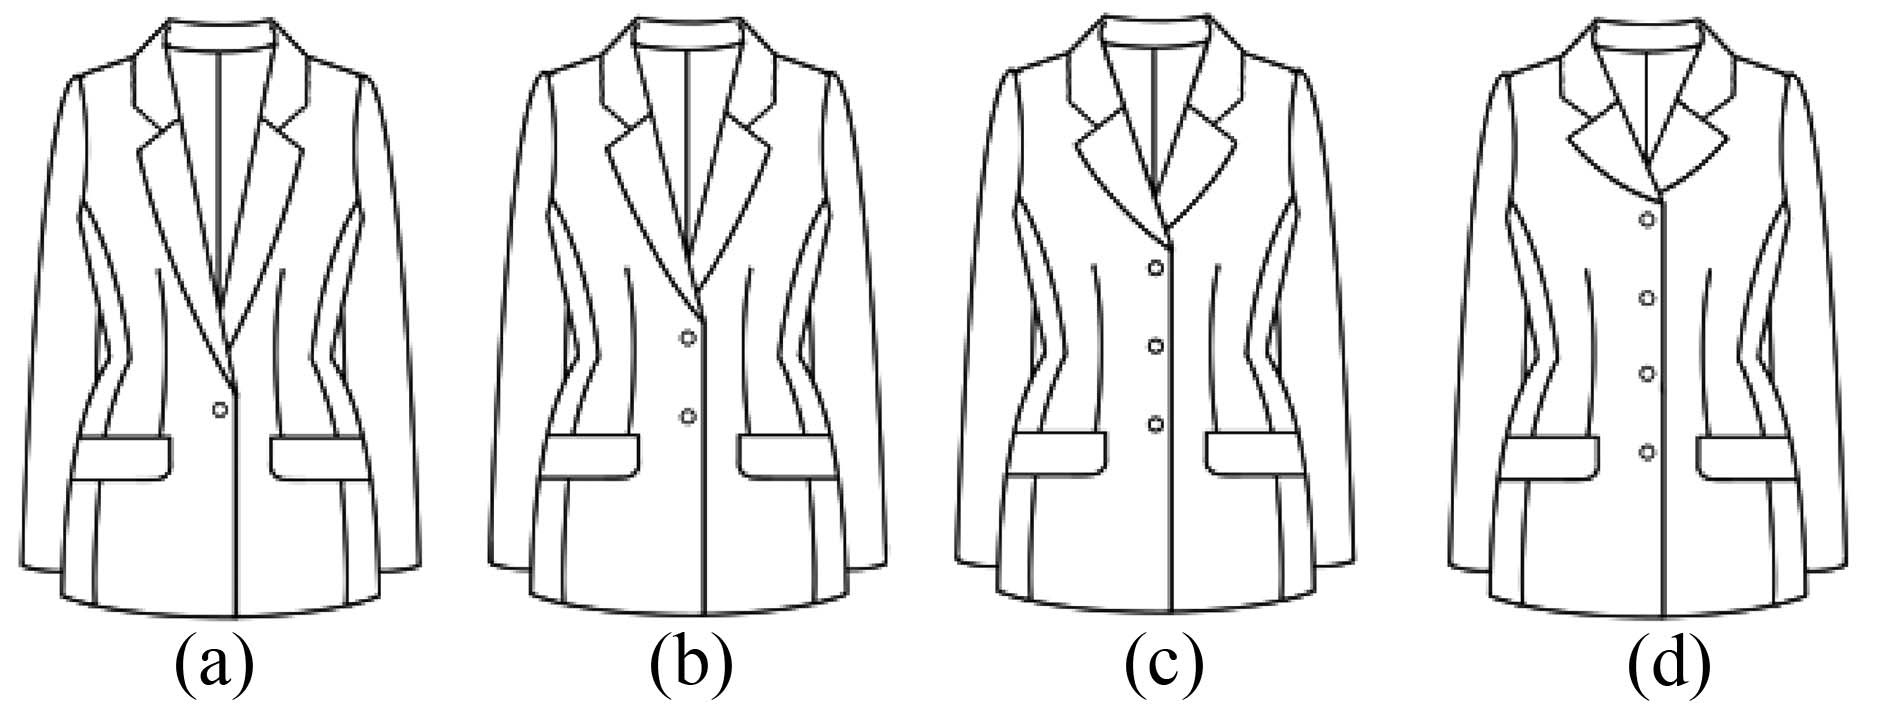 Jacket styles; (a) 1-button jacket, (b) 2-button jacket, (c) 3-button jacket, (d) 4-button jacket.